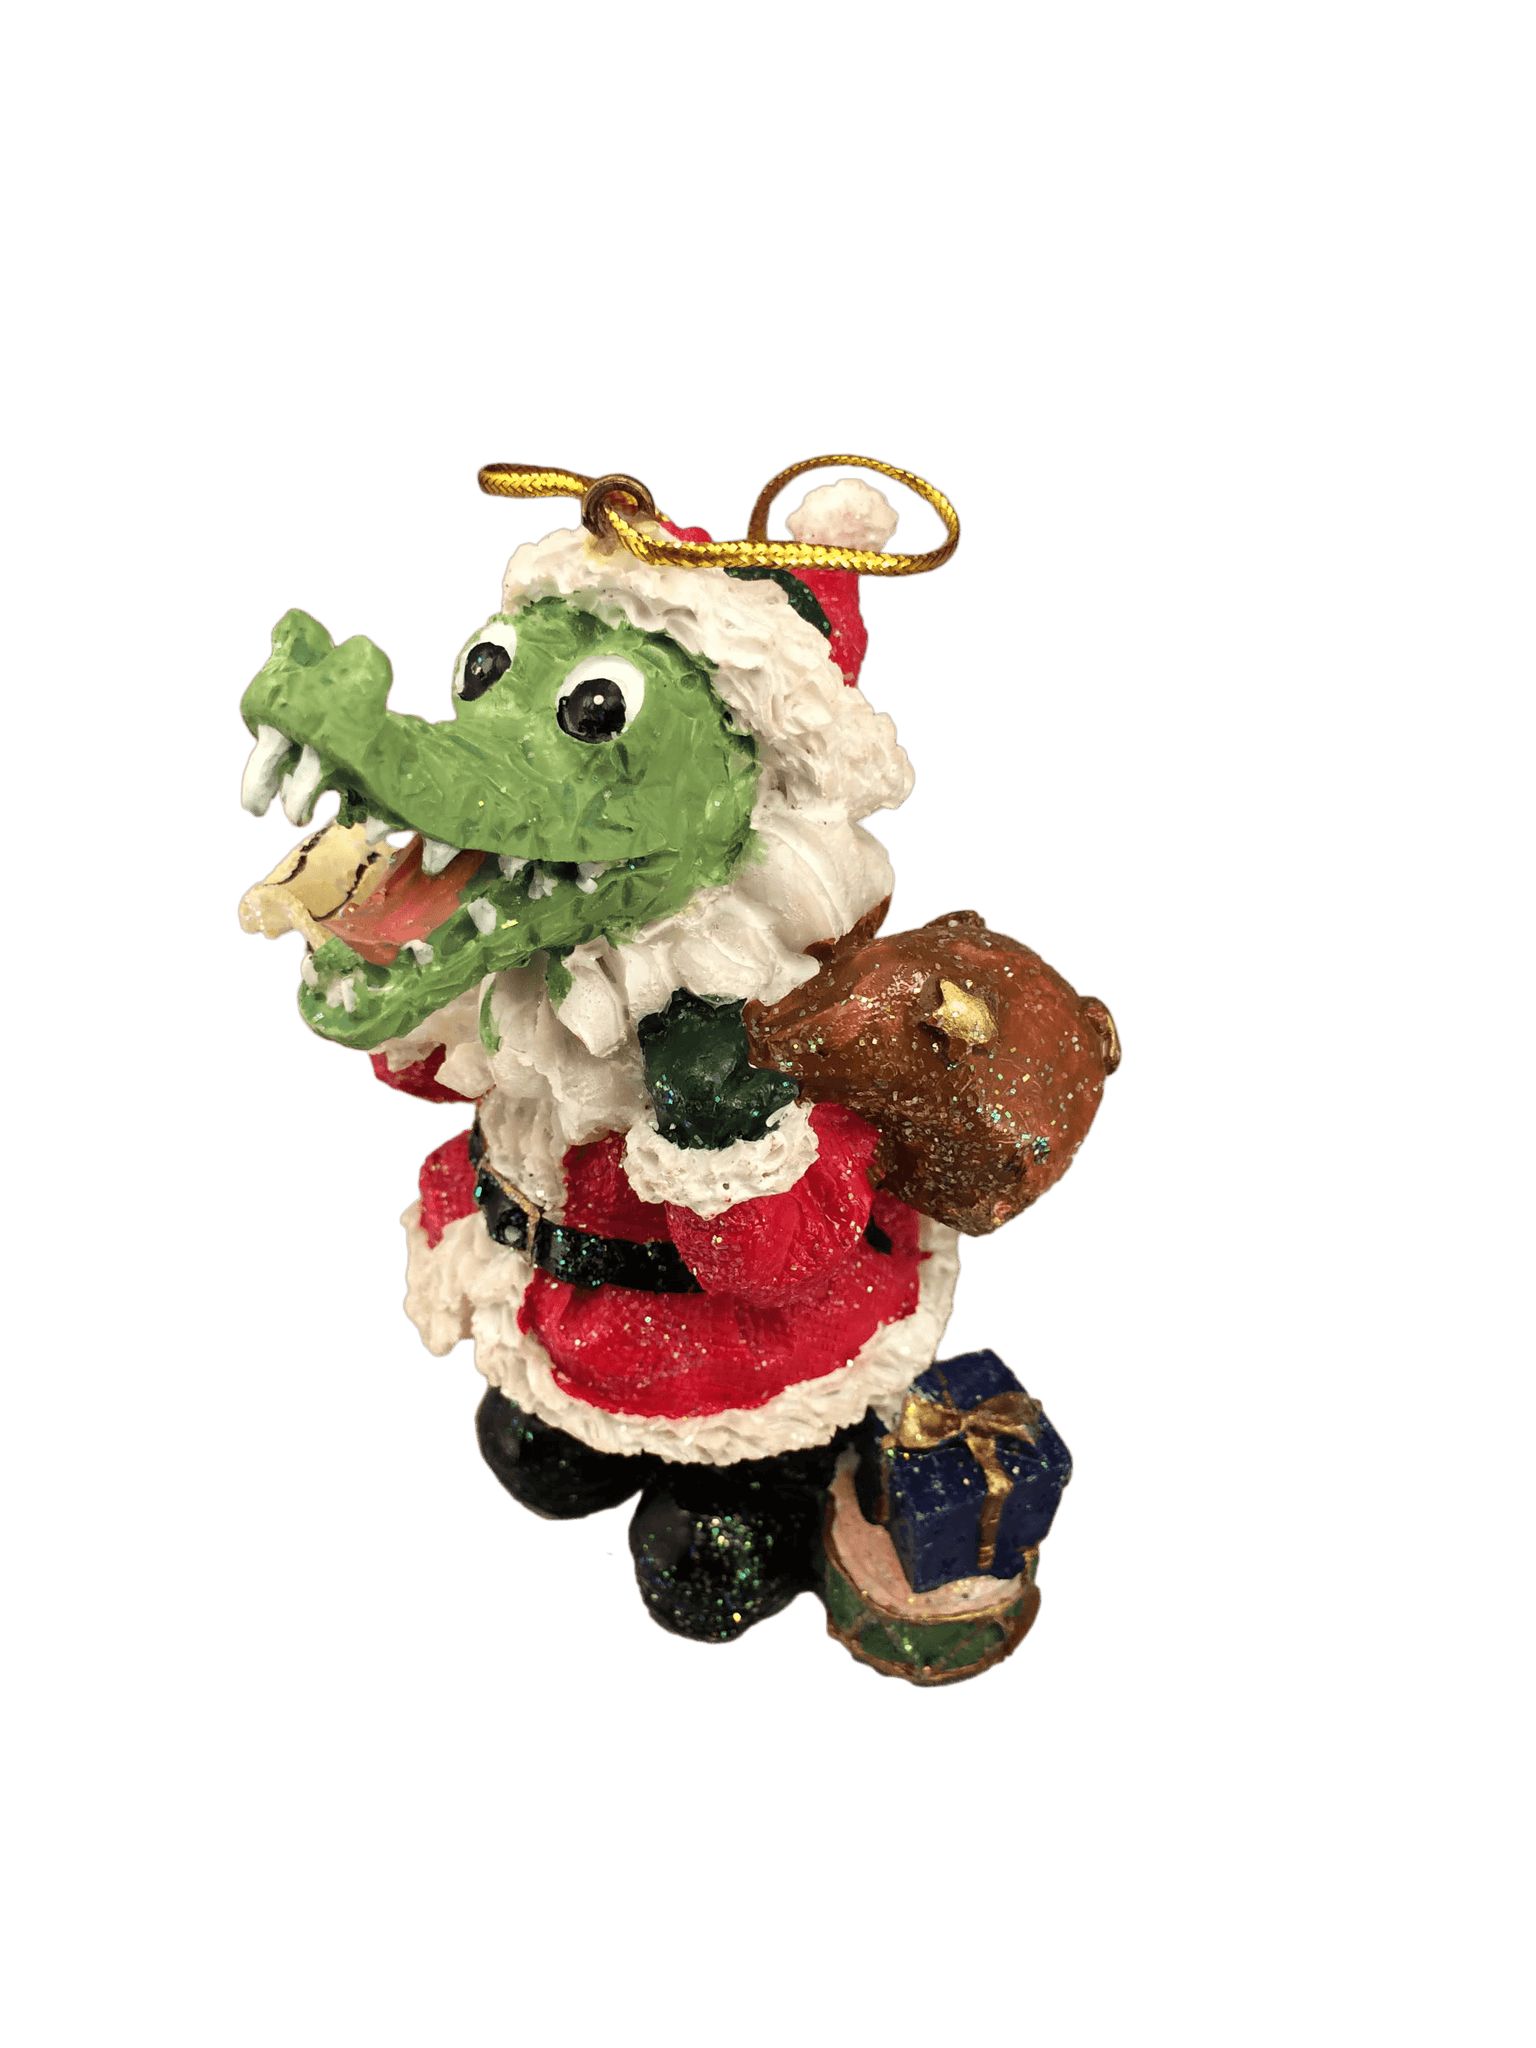 santa alligator ornament presents